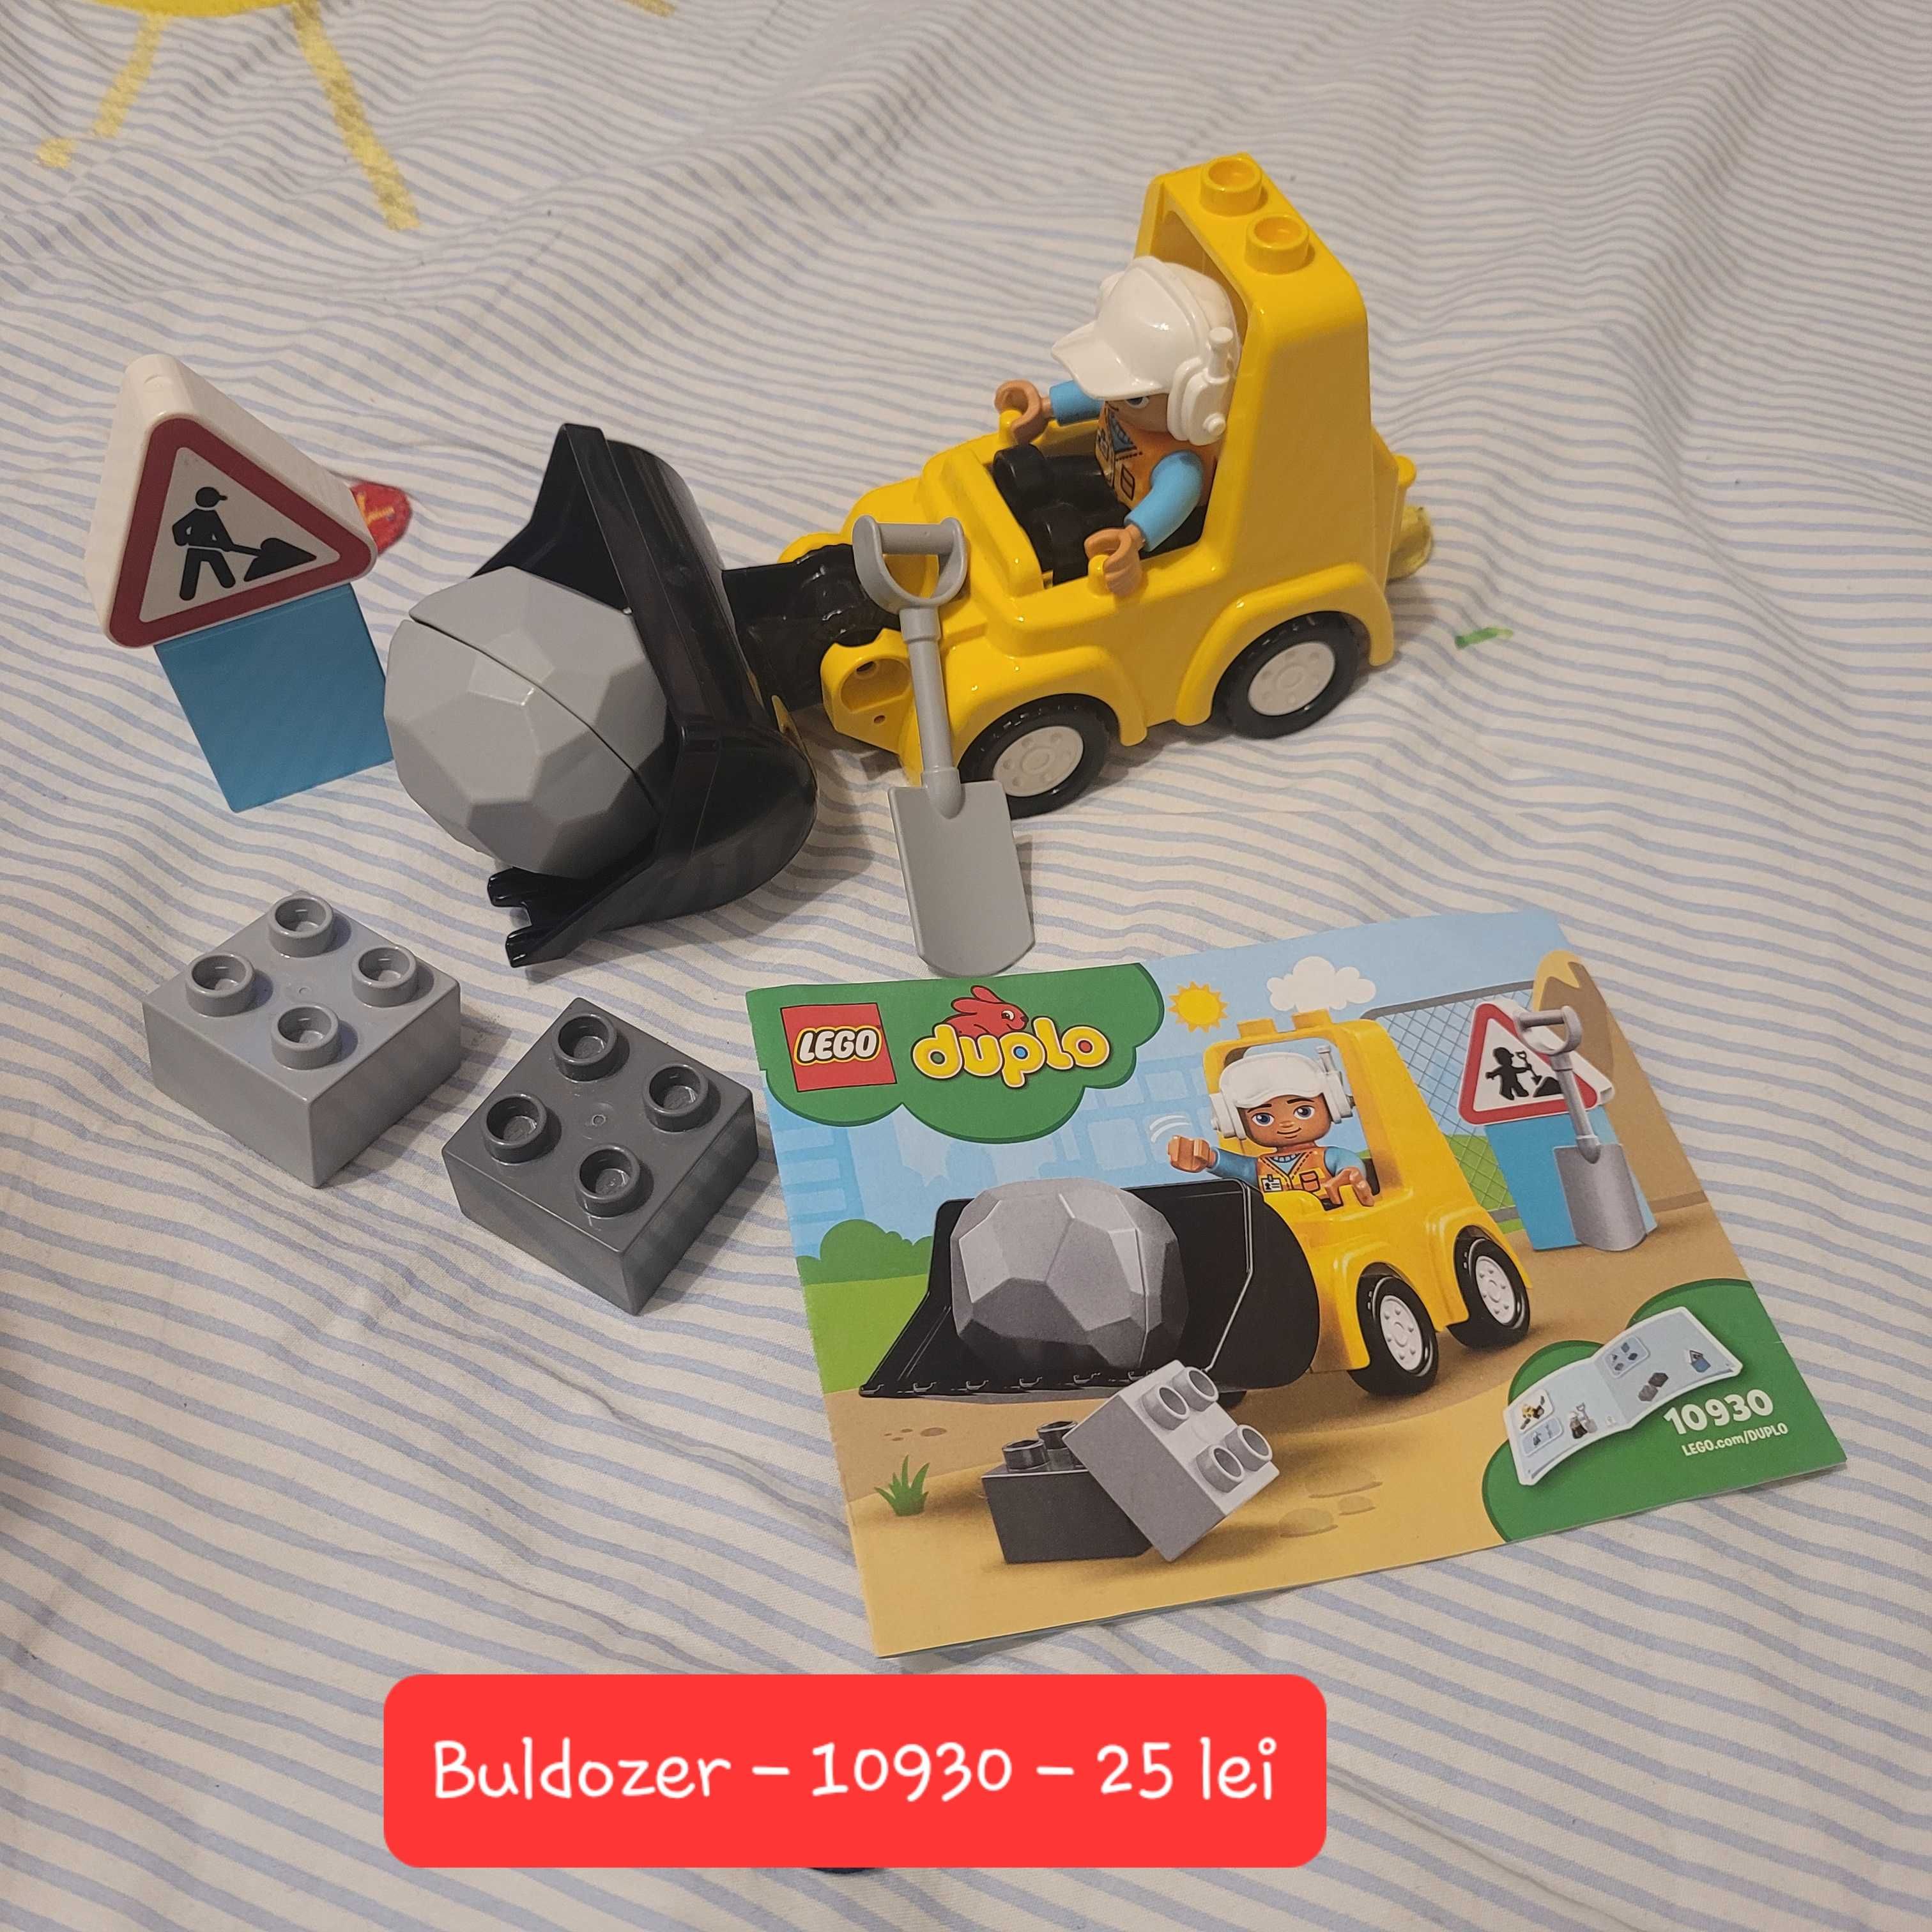 Lego Duplo - Buldozer - 10930